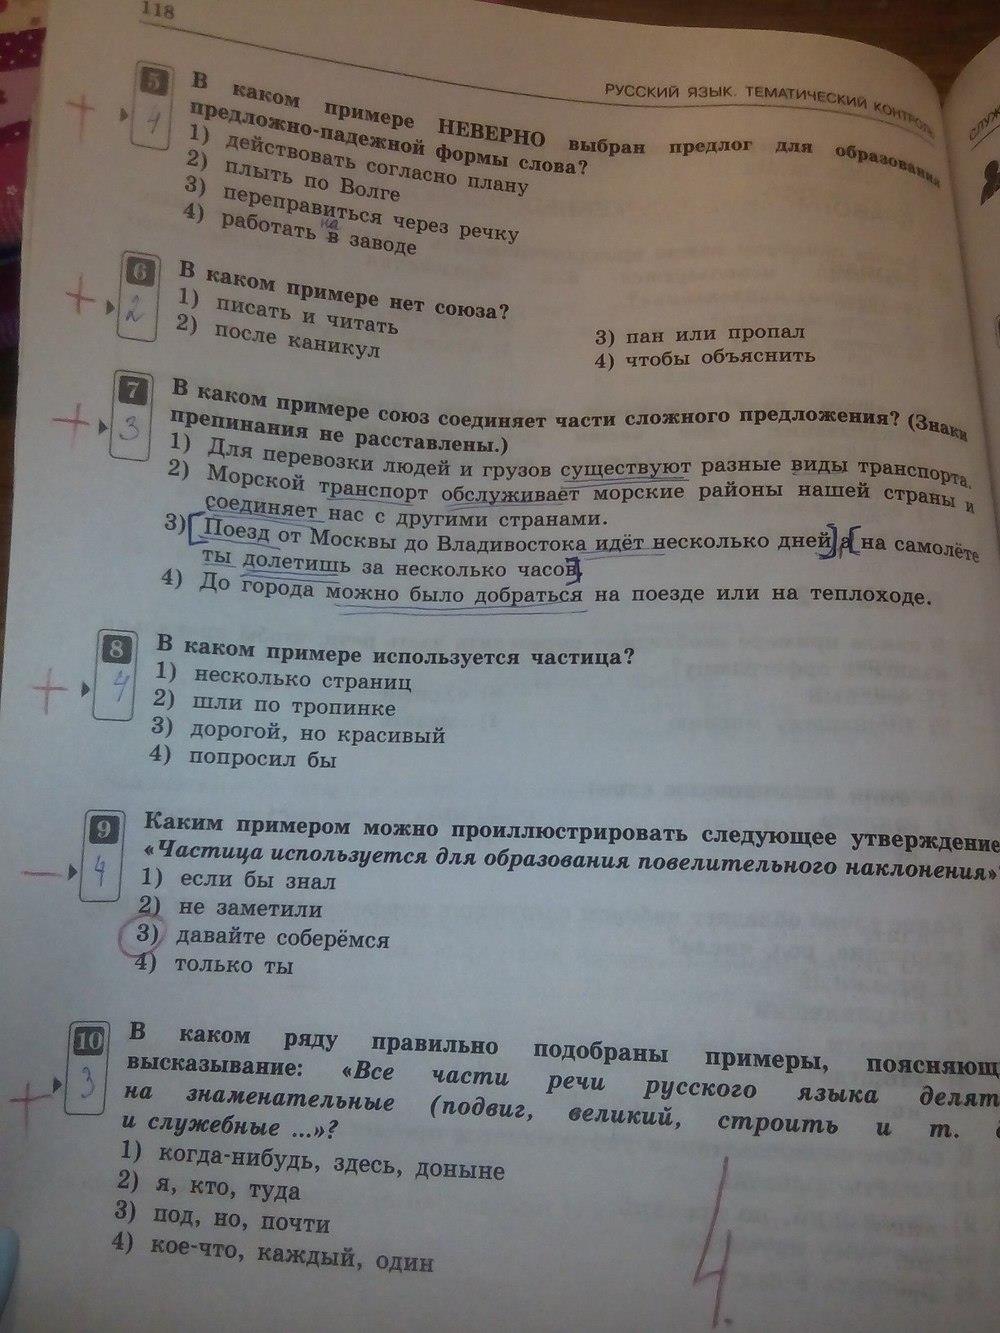 гдз 7 класс тематический контроль страница 118 русский язык Александров